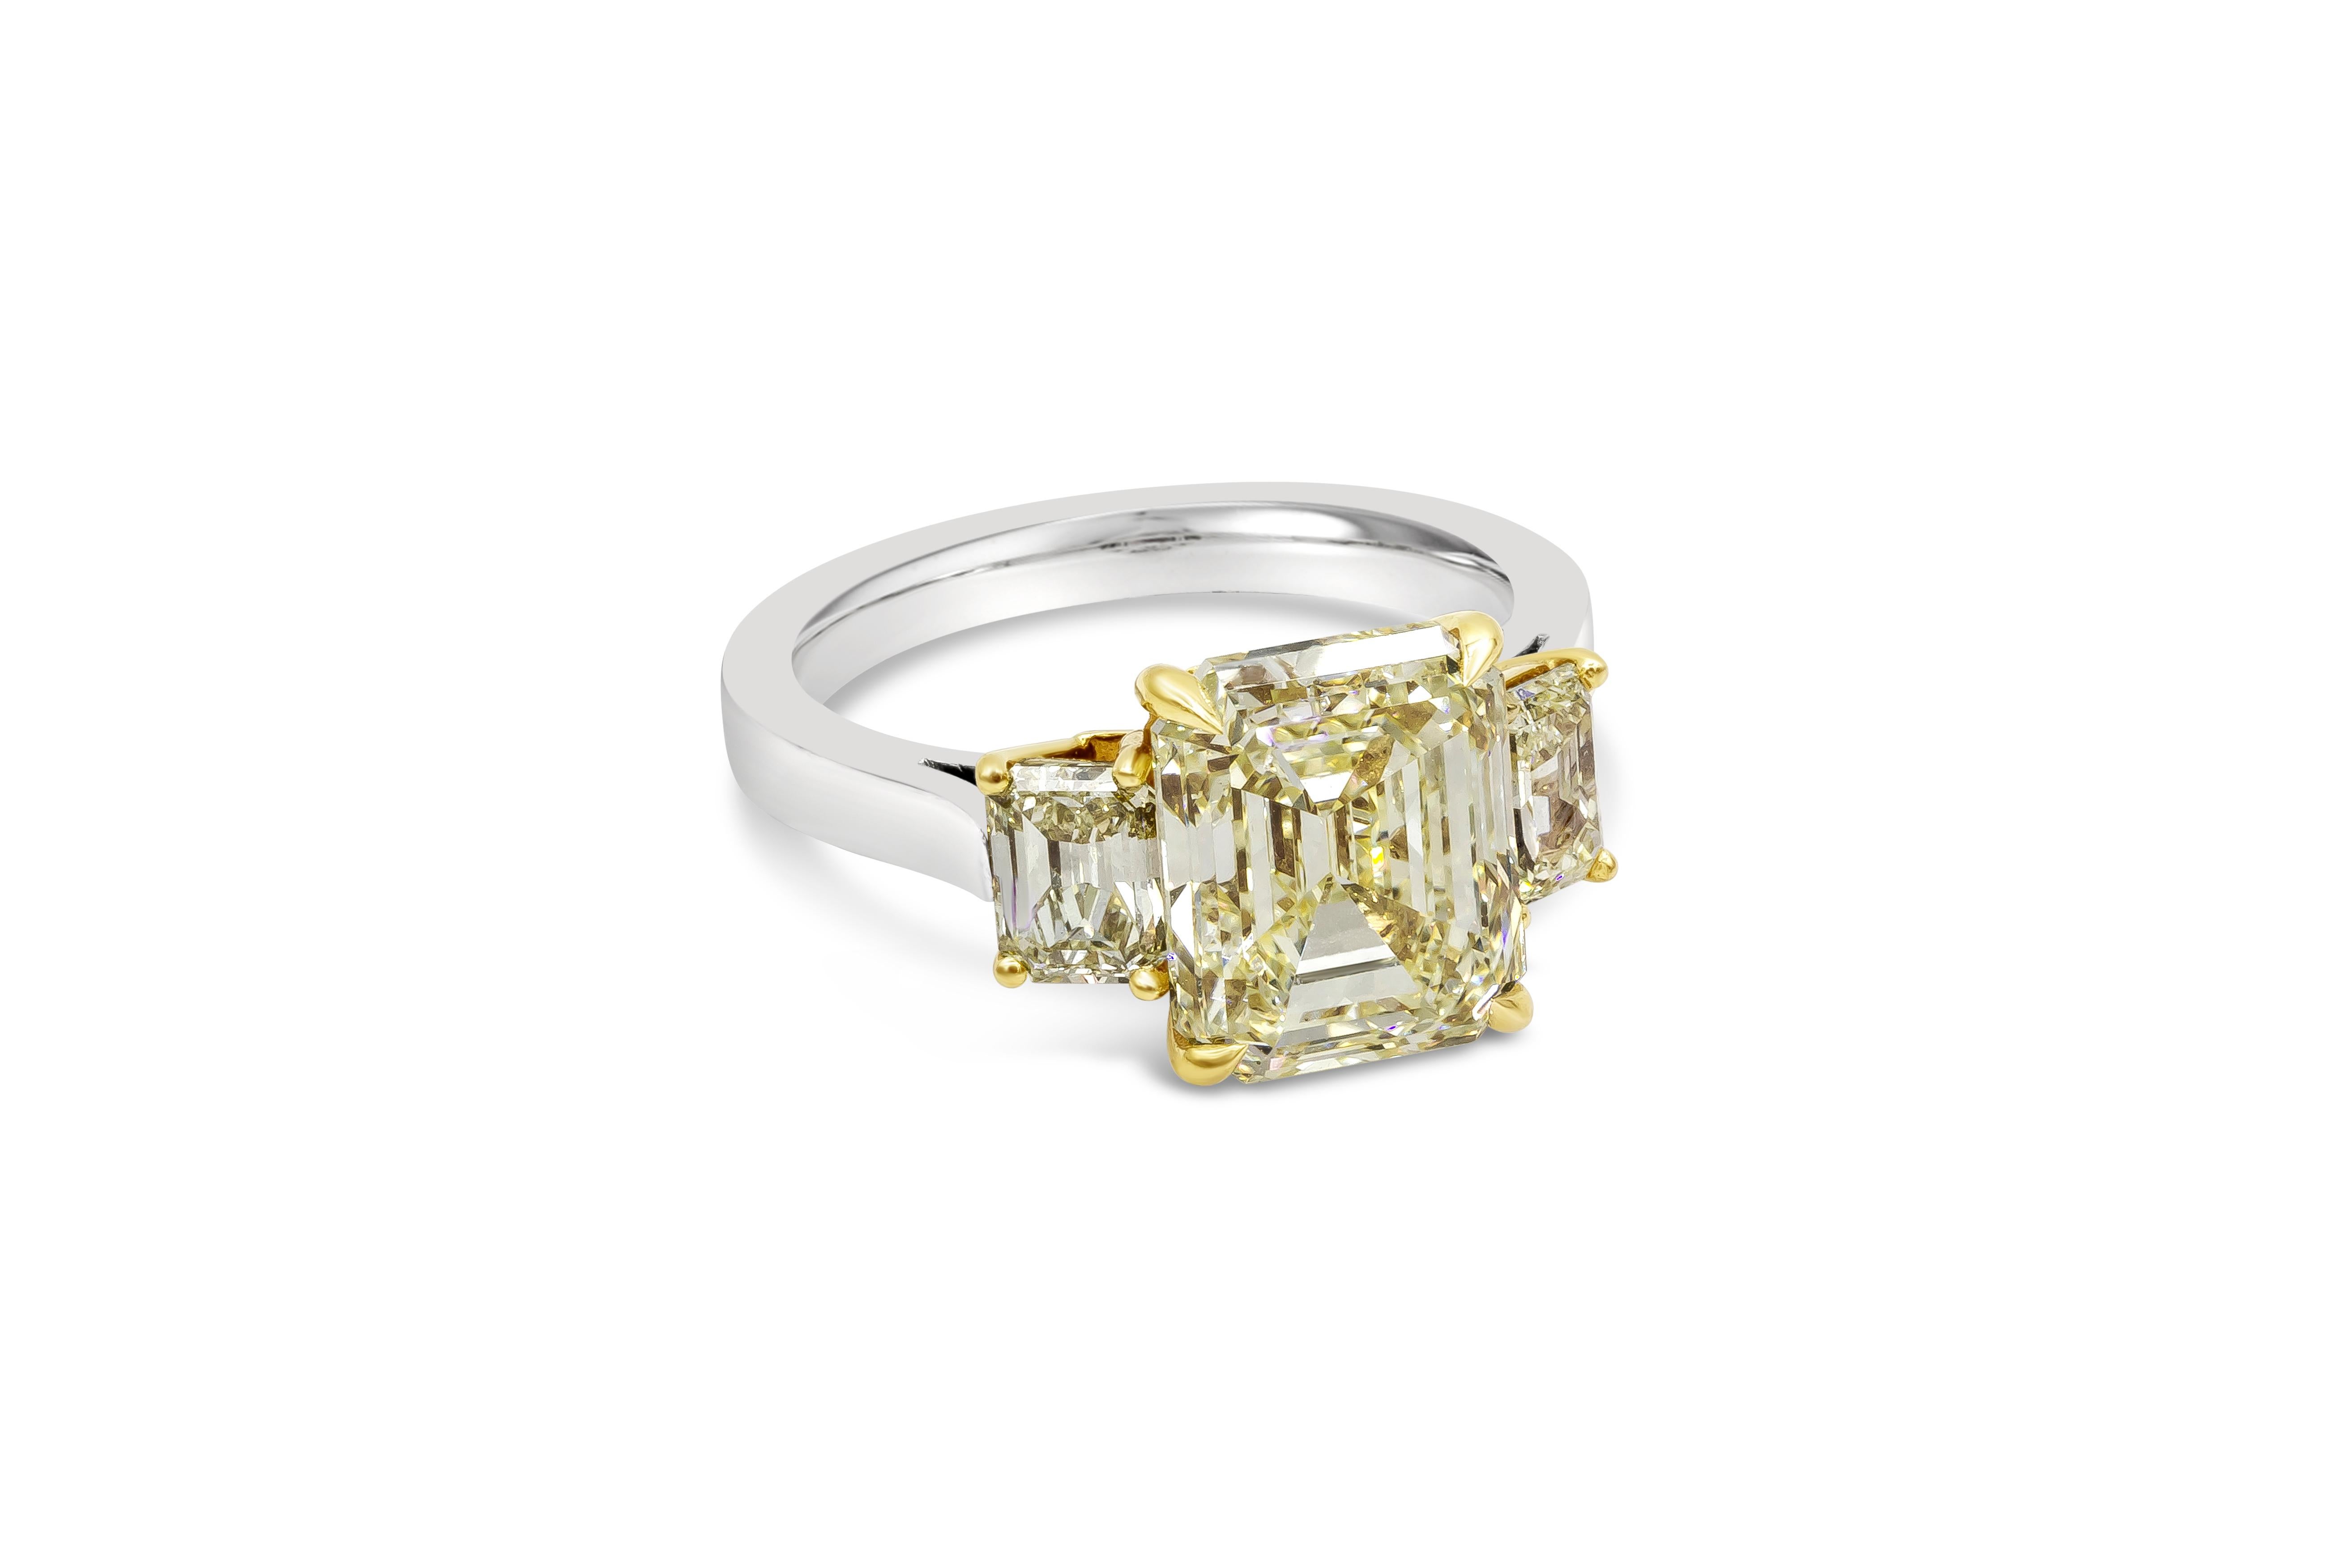 Une bague de fiançailles rare et spectaculaire mettant en valeur un diamant central de 5,17 carats de taille émeraude certifié par le GIA comme étant de couleur jaune fantaisie et d'une pureté VS1. Deux petits diamants jaunes fantaisie de taille